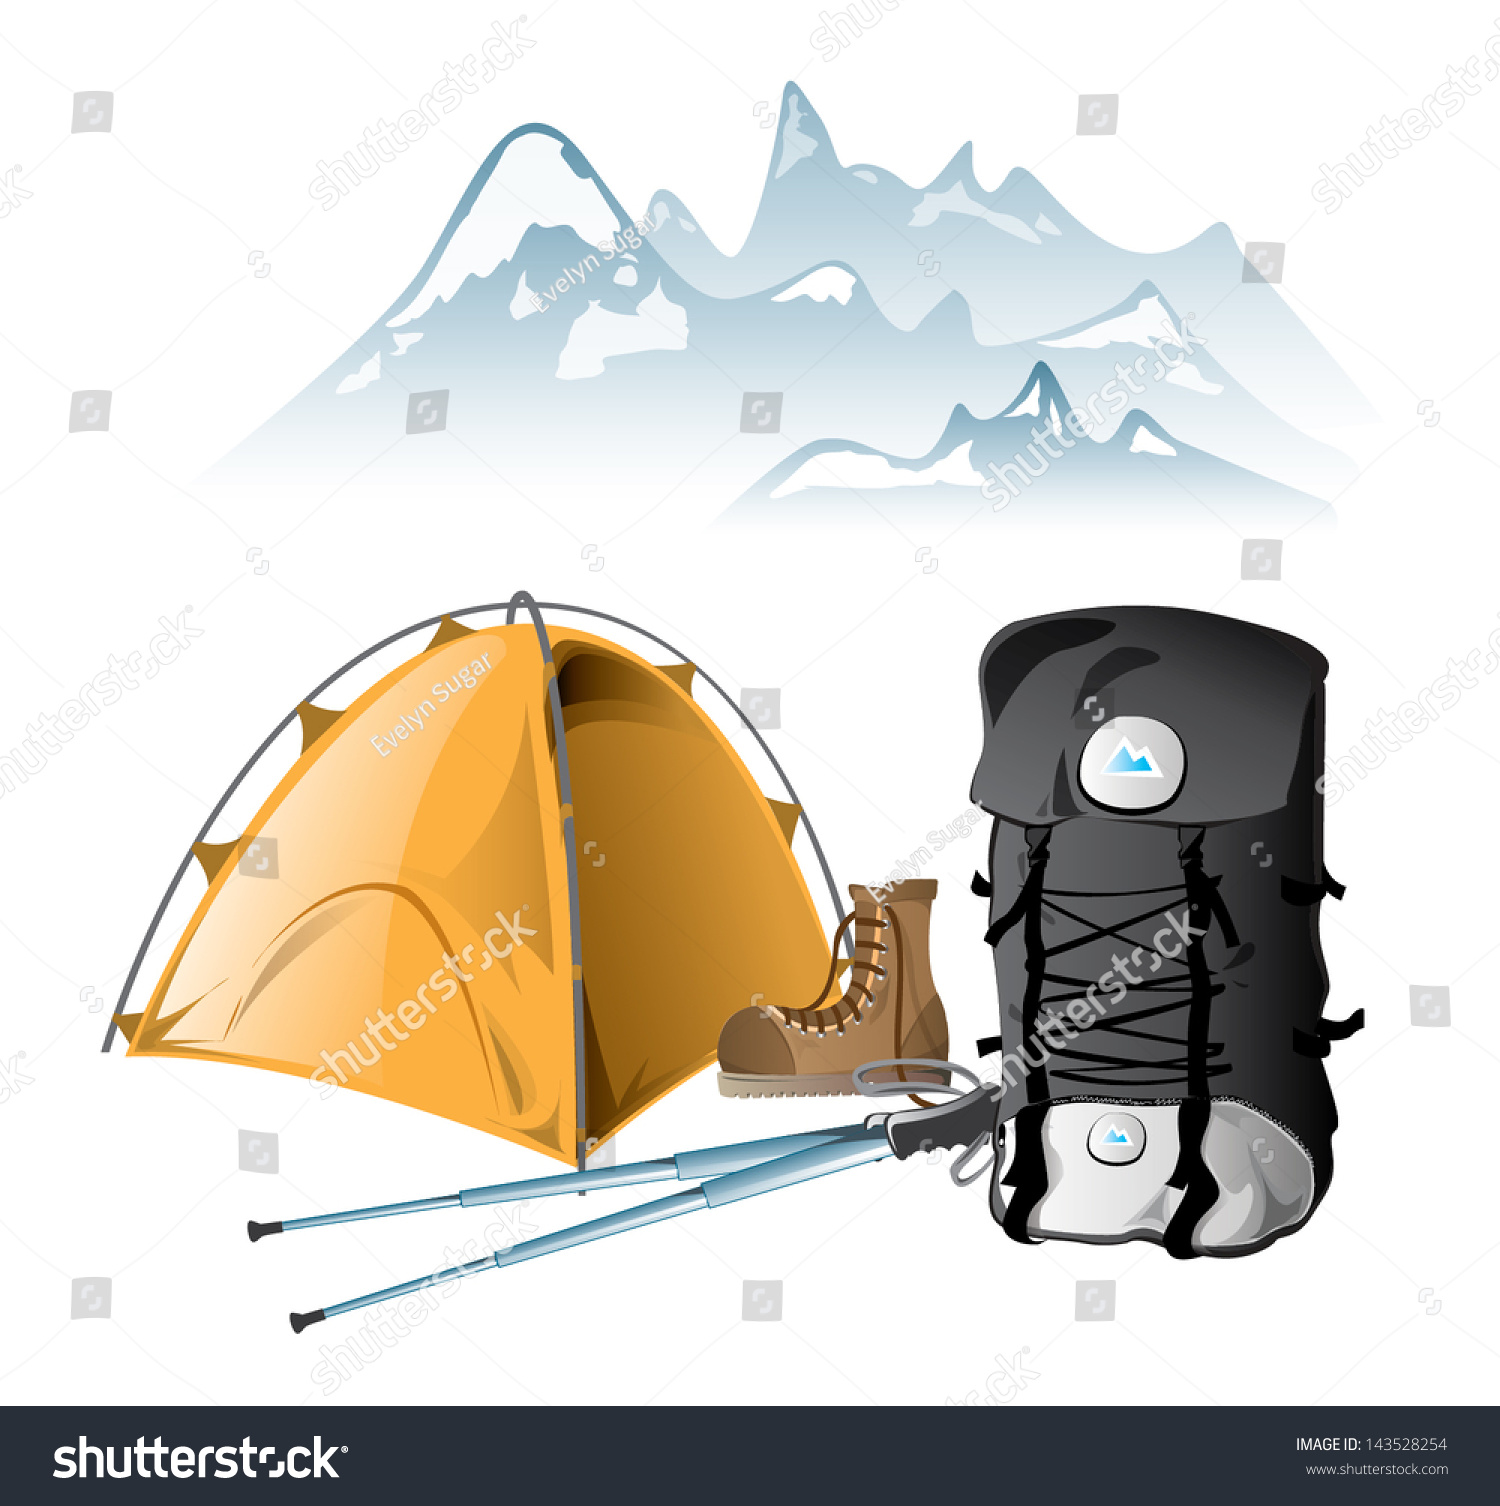 mountain walking equipment